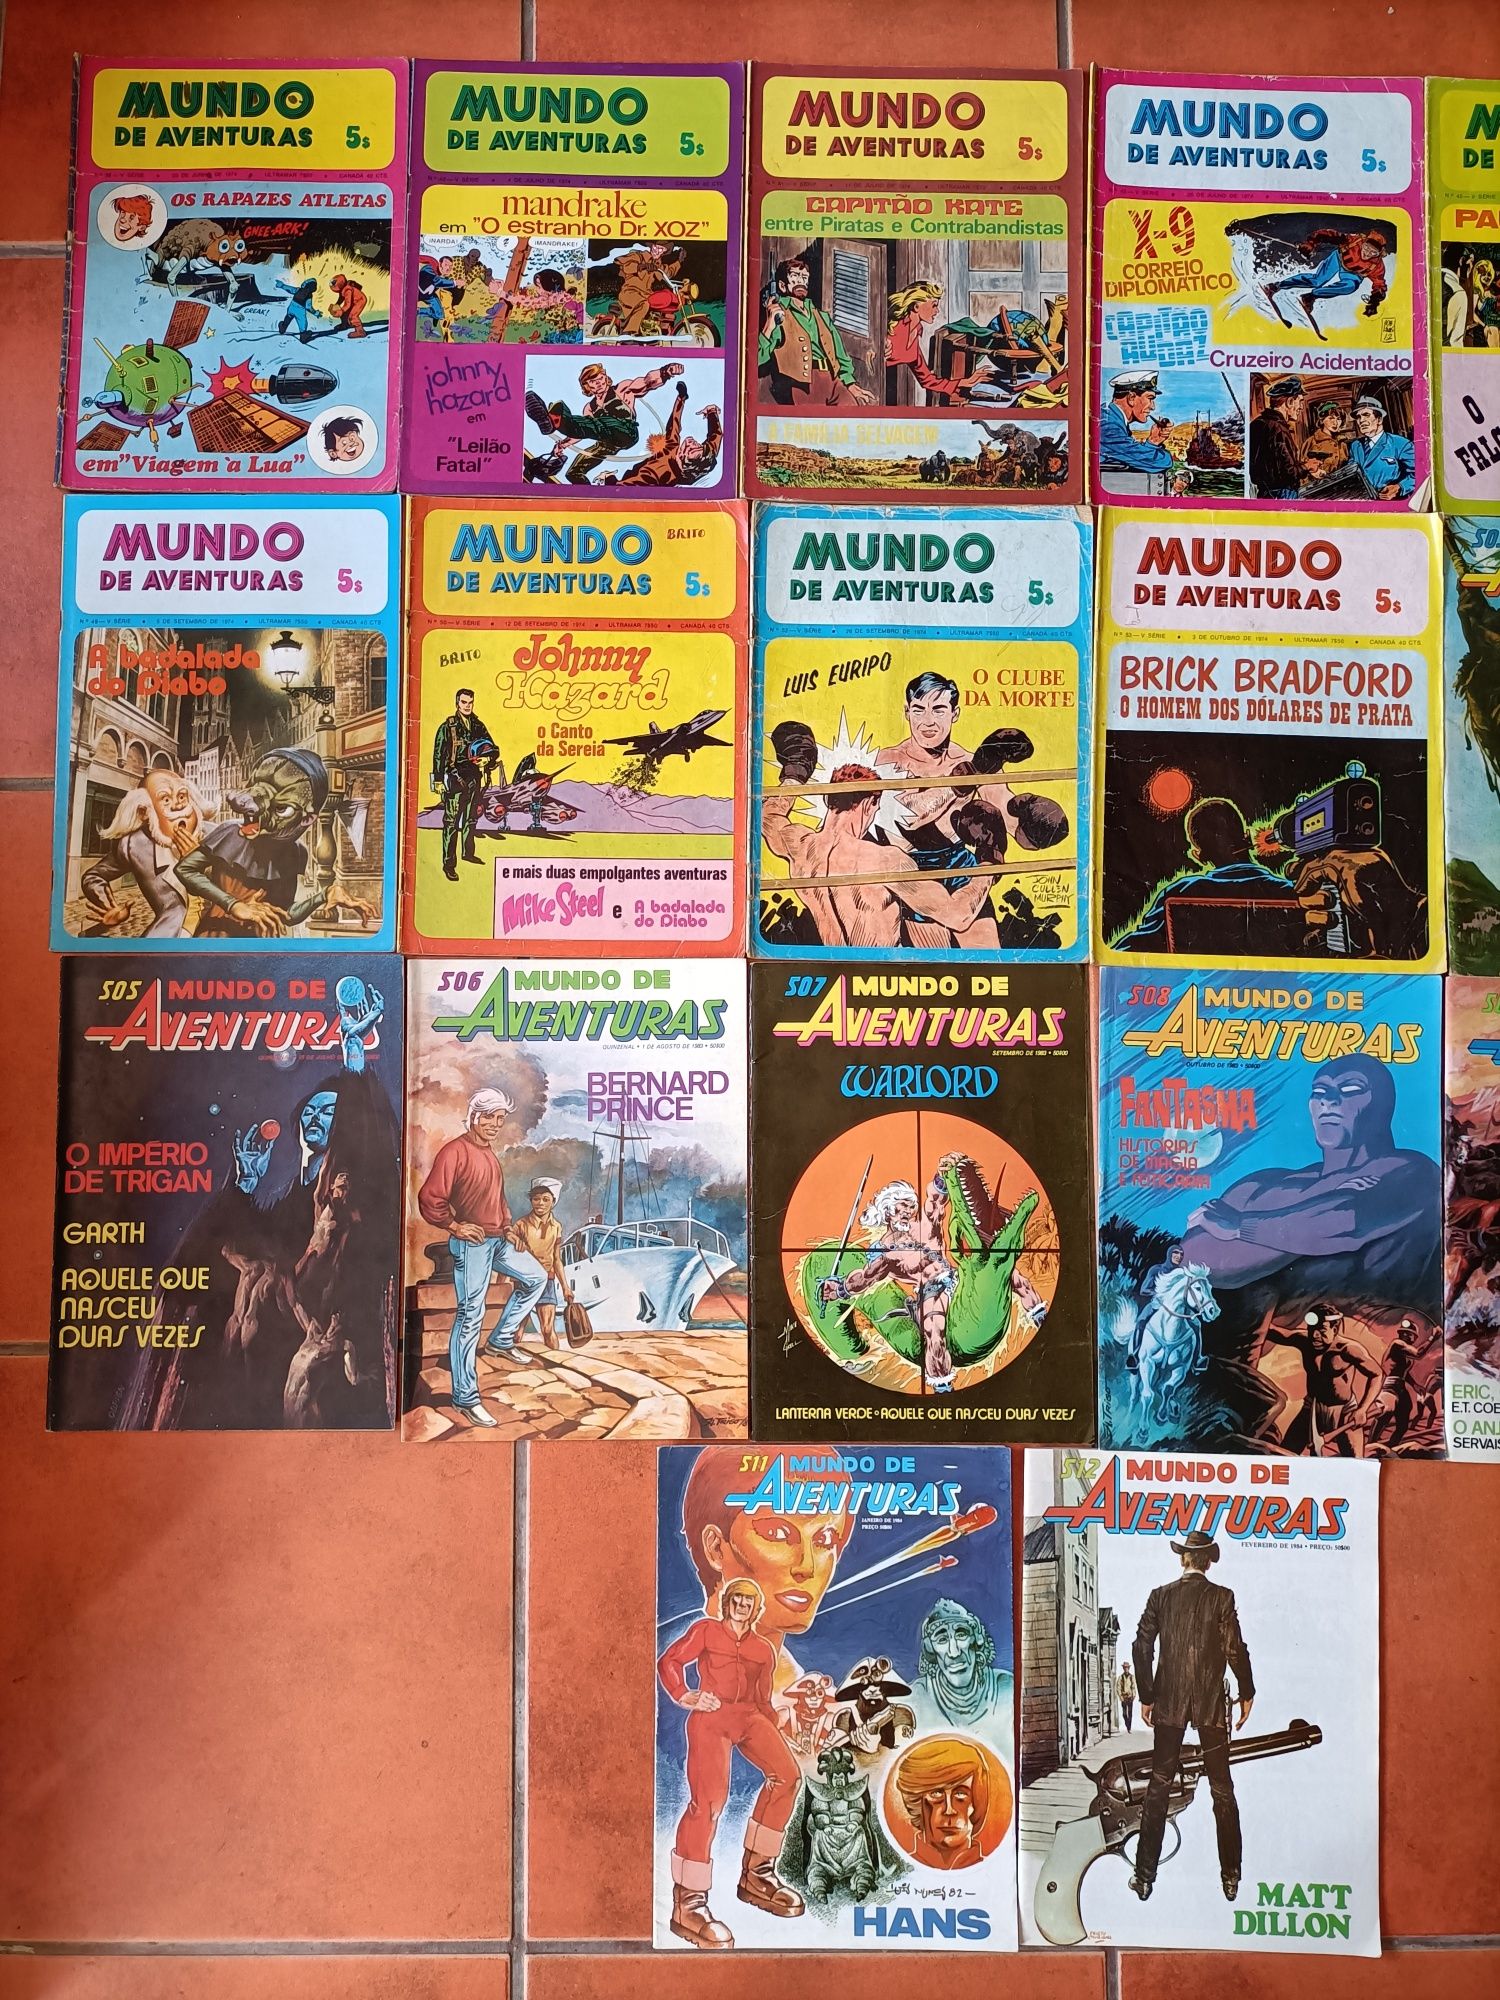 61 Livros de 3 Col. diferentes do Mundo de aventuras, maiores que A4